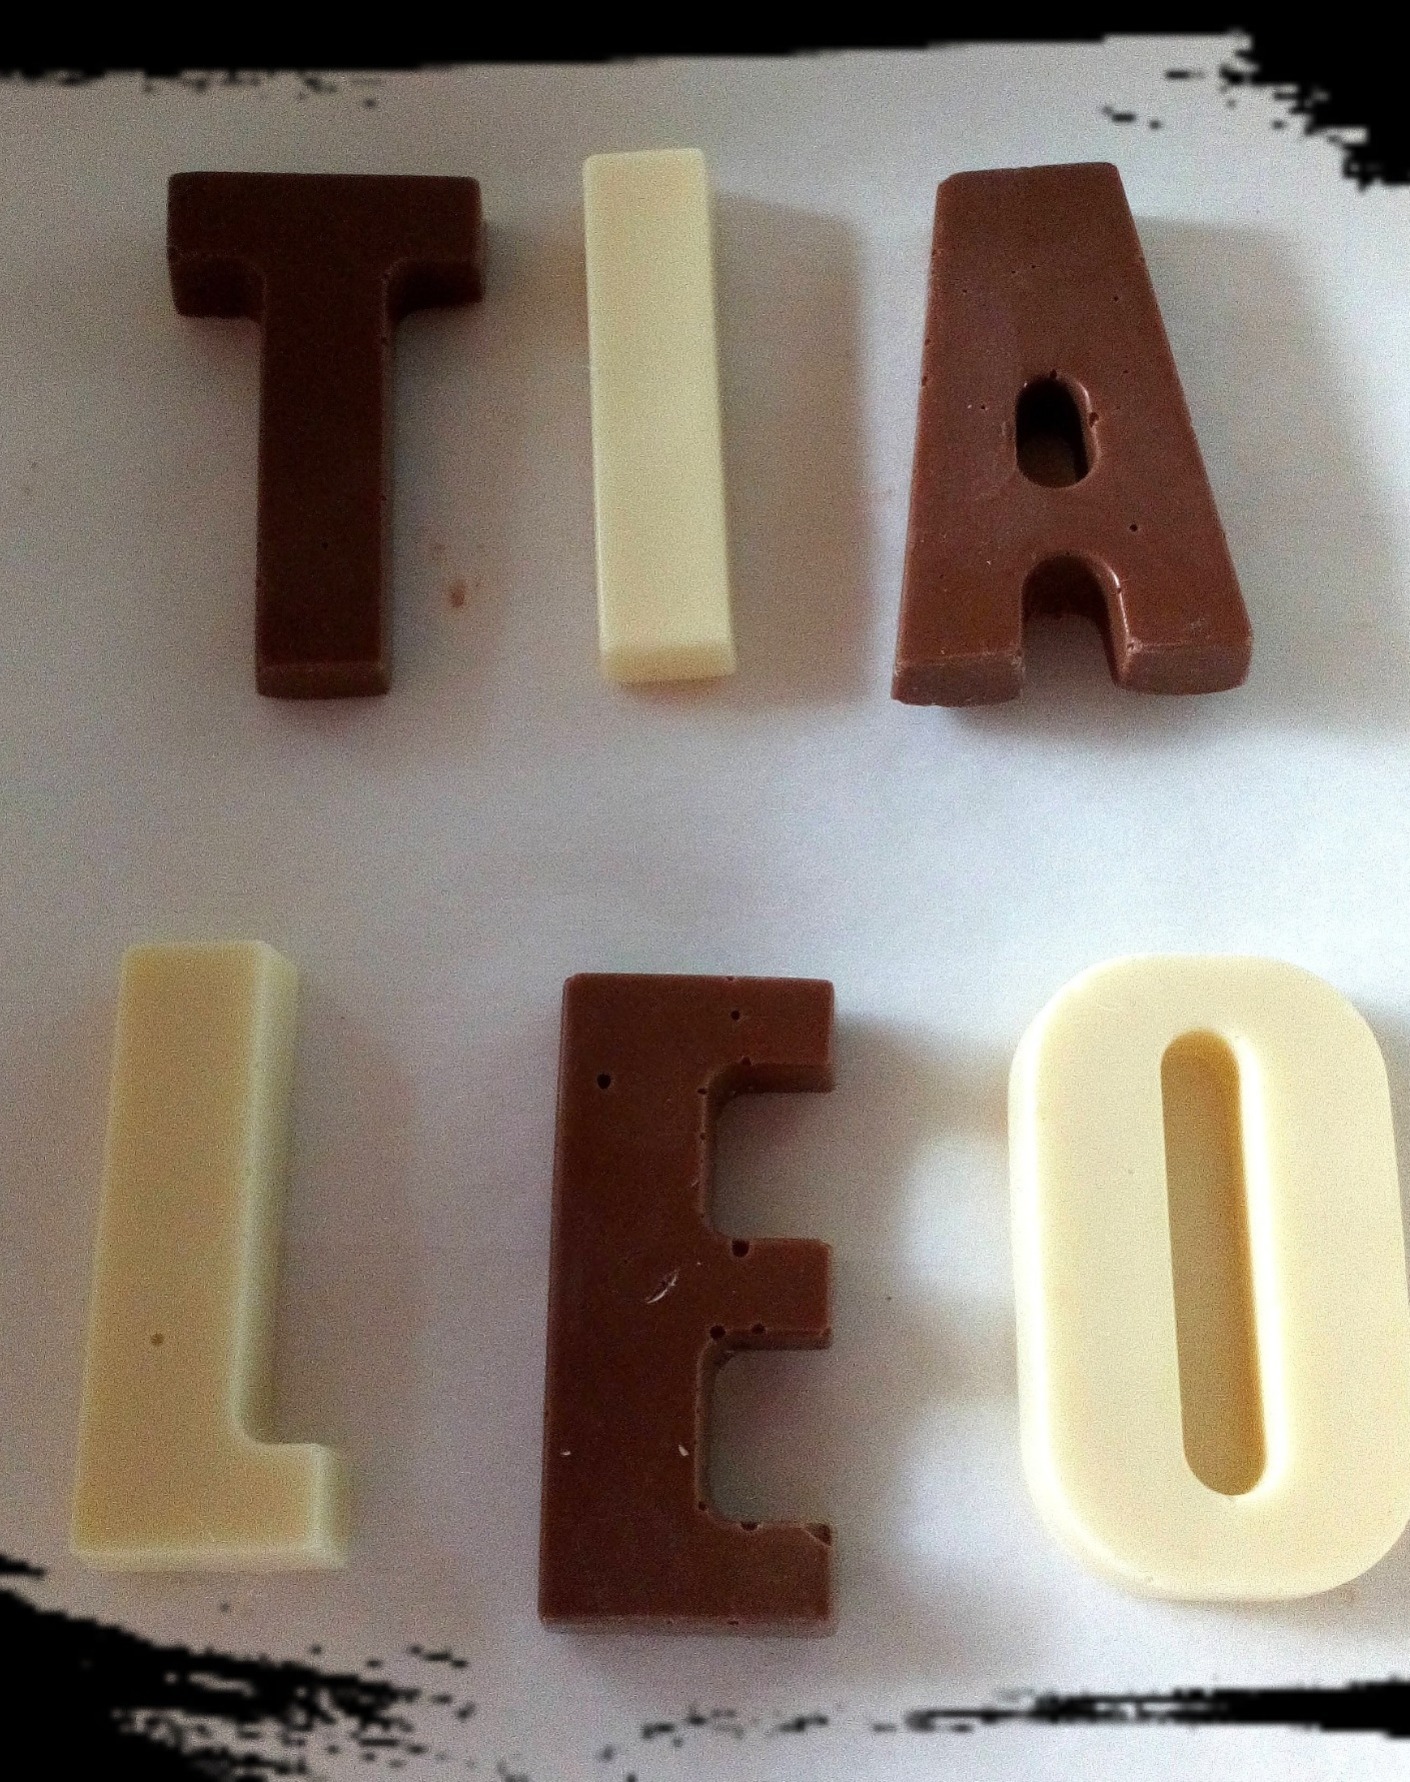 Chocolate Tia and Leo names